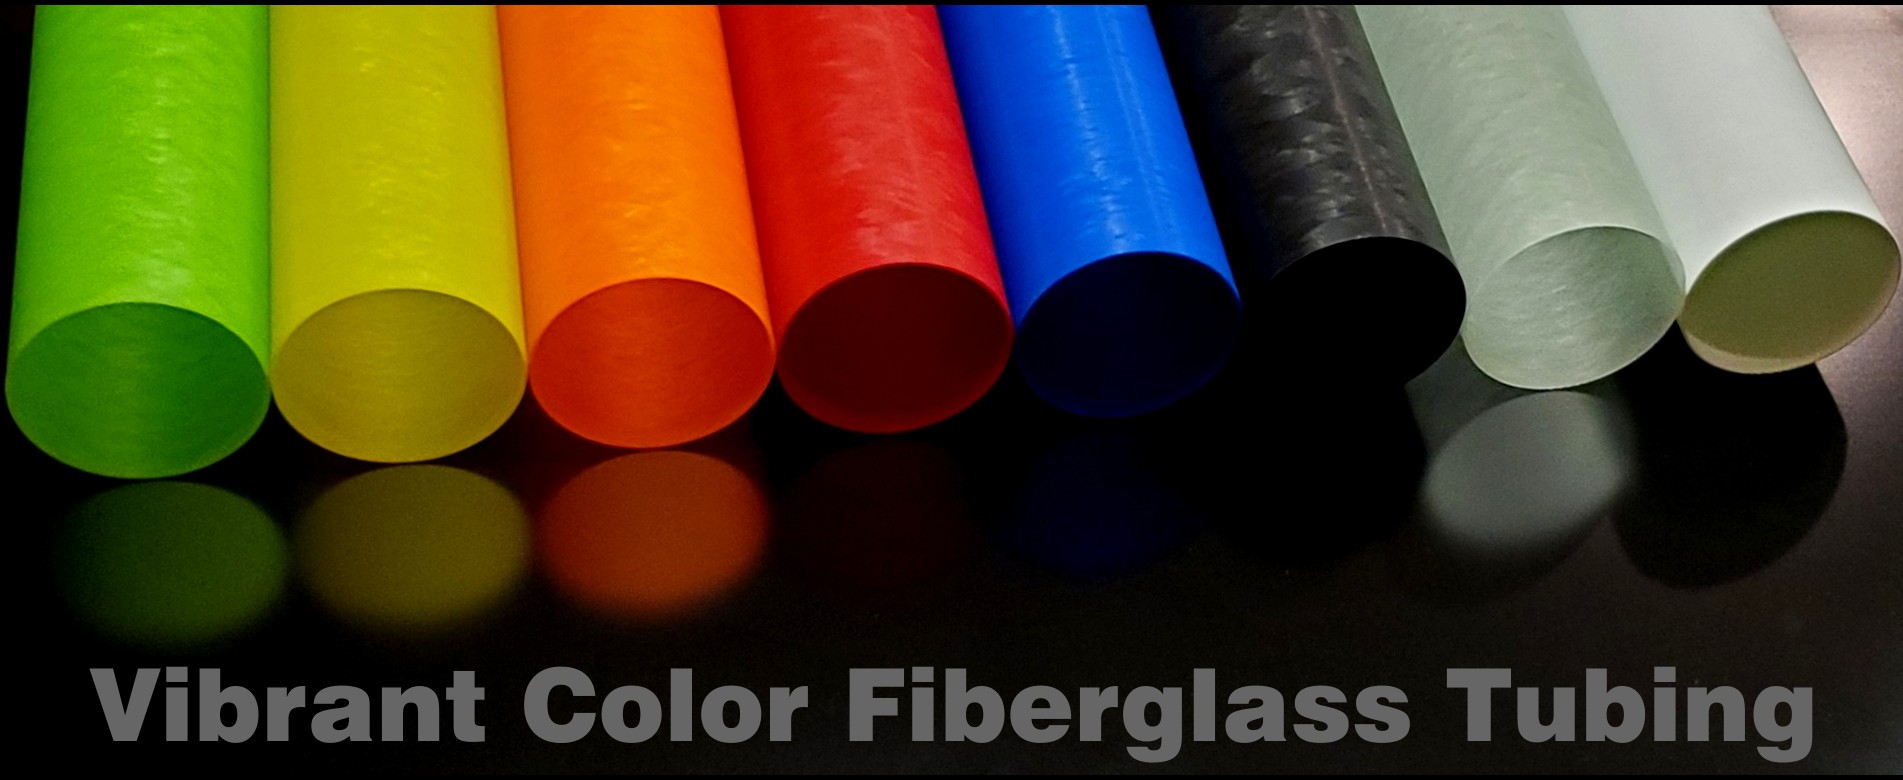 Vibrant Color Fiberglass Tubing